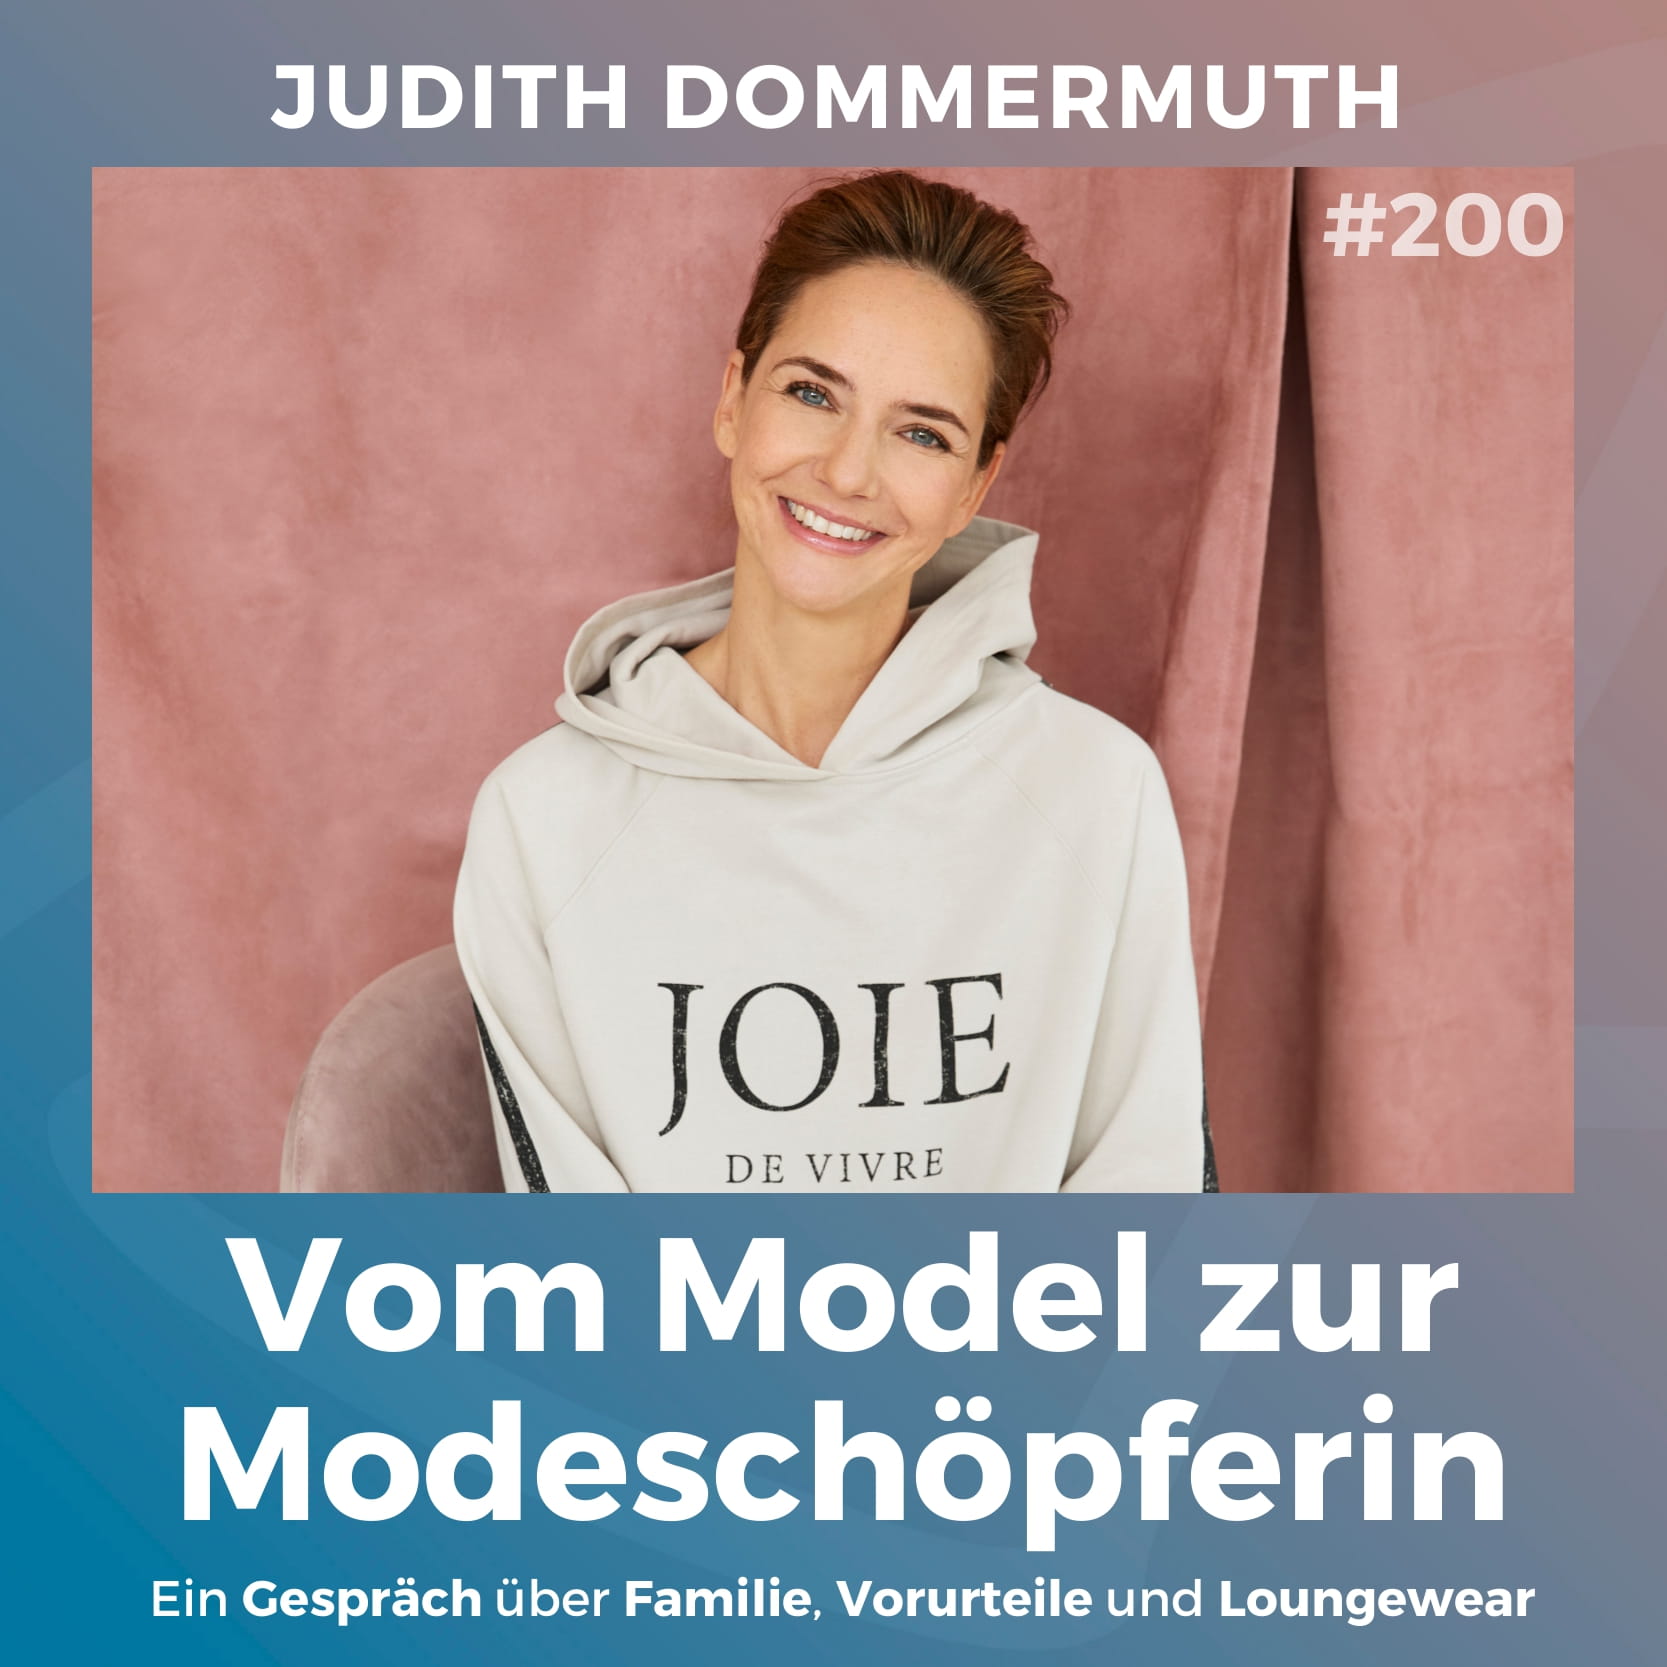 #200: Vom Model zur Modeschöpferin | Judith Dommermuth